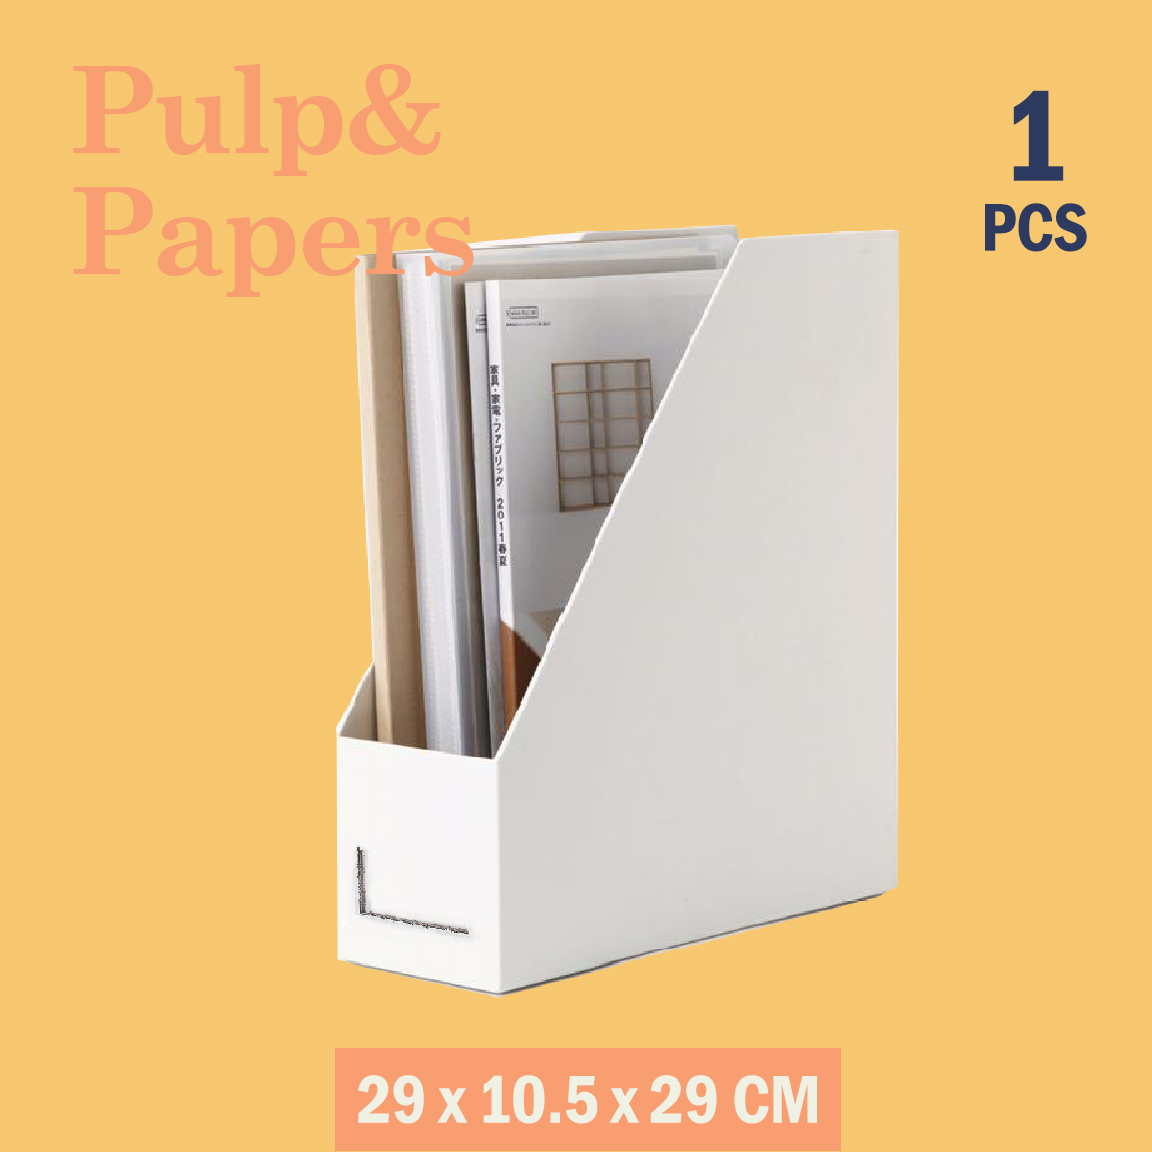 Pulp&Paper ECO กล่องแฟ้มจัดระเบียบแฟ้ม เอกสาร นิตยสาร หนังสือ พับเก็บได้ - 1 ชิ้น